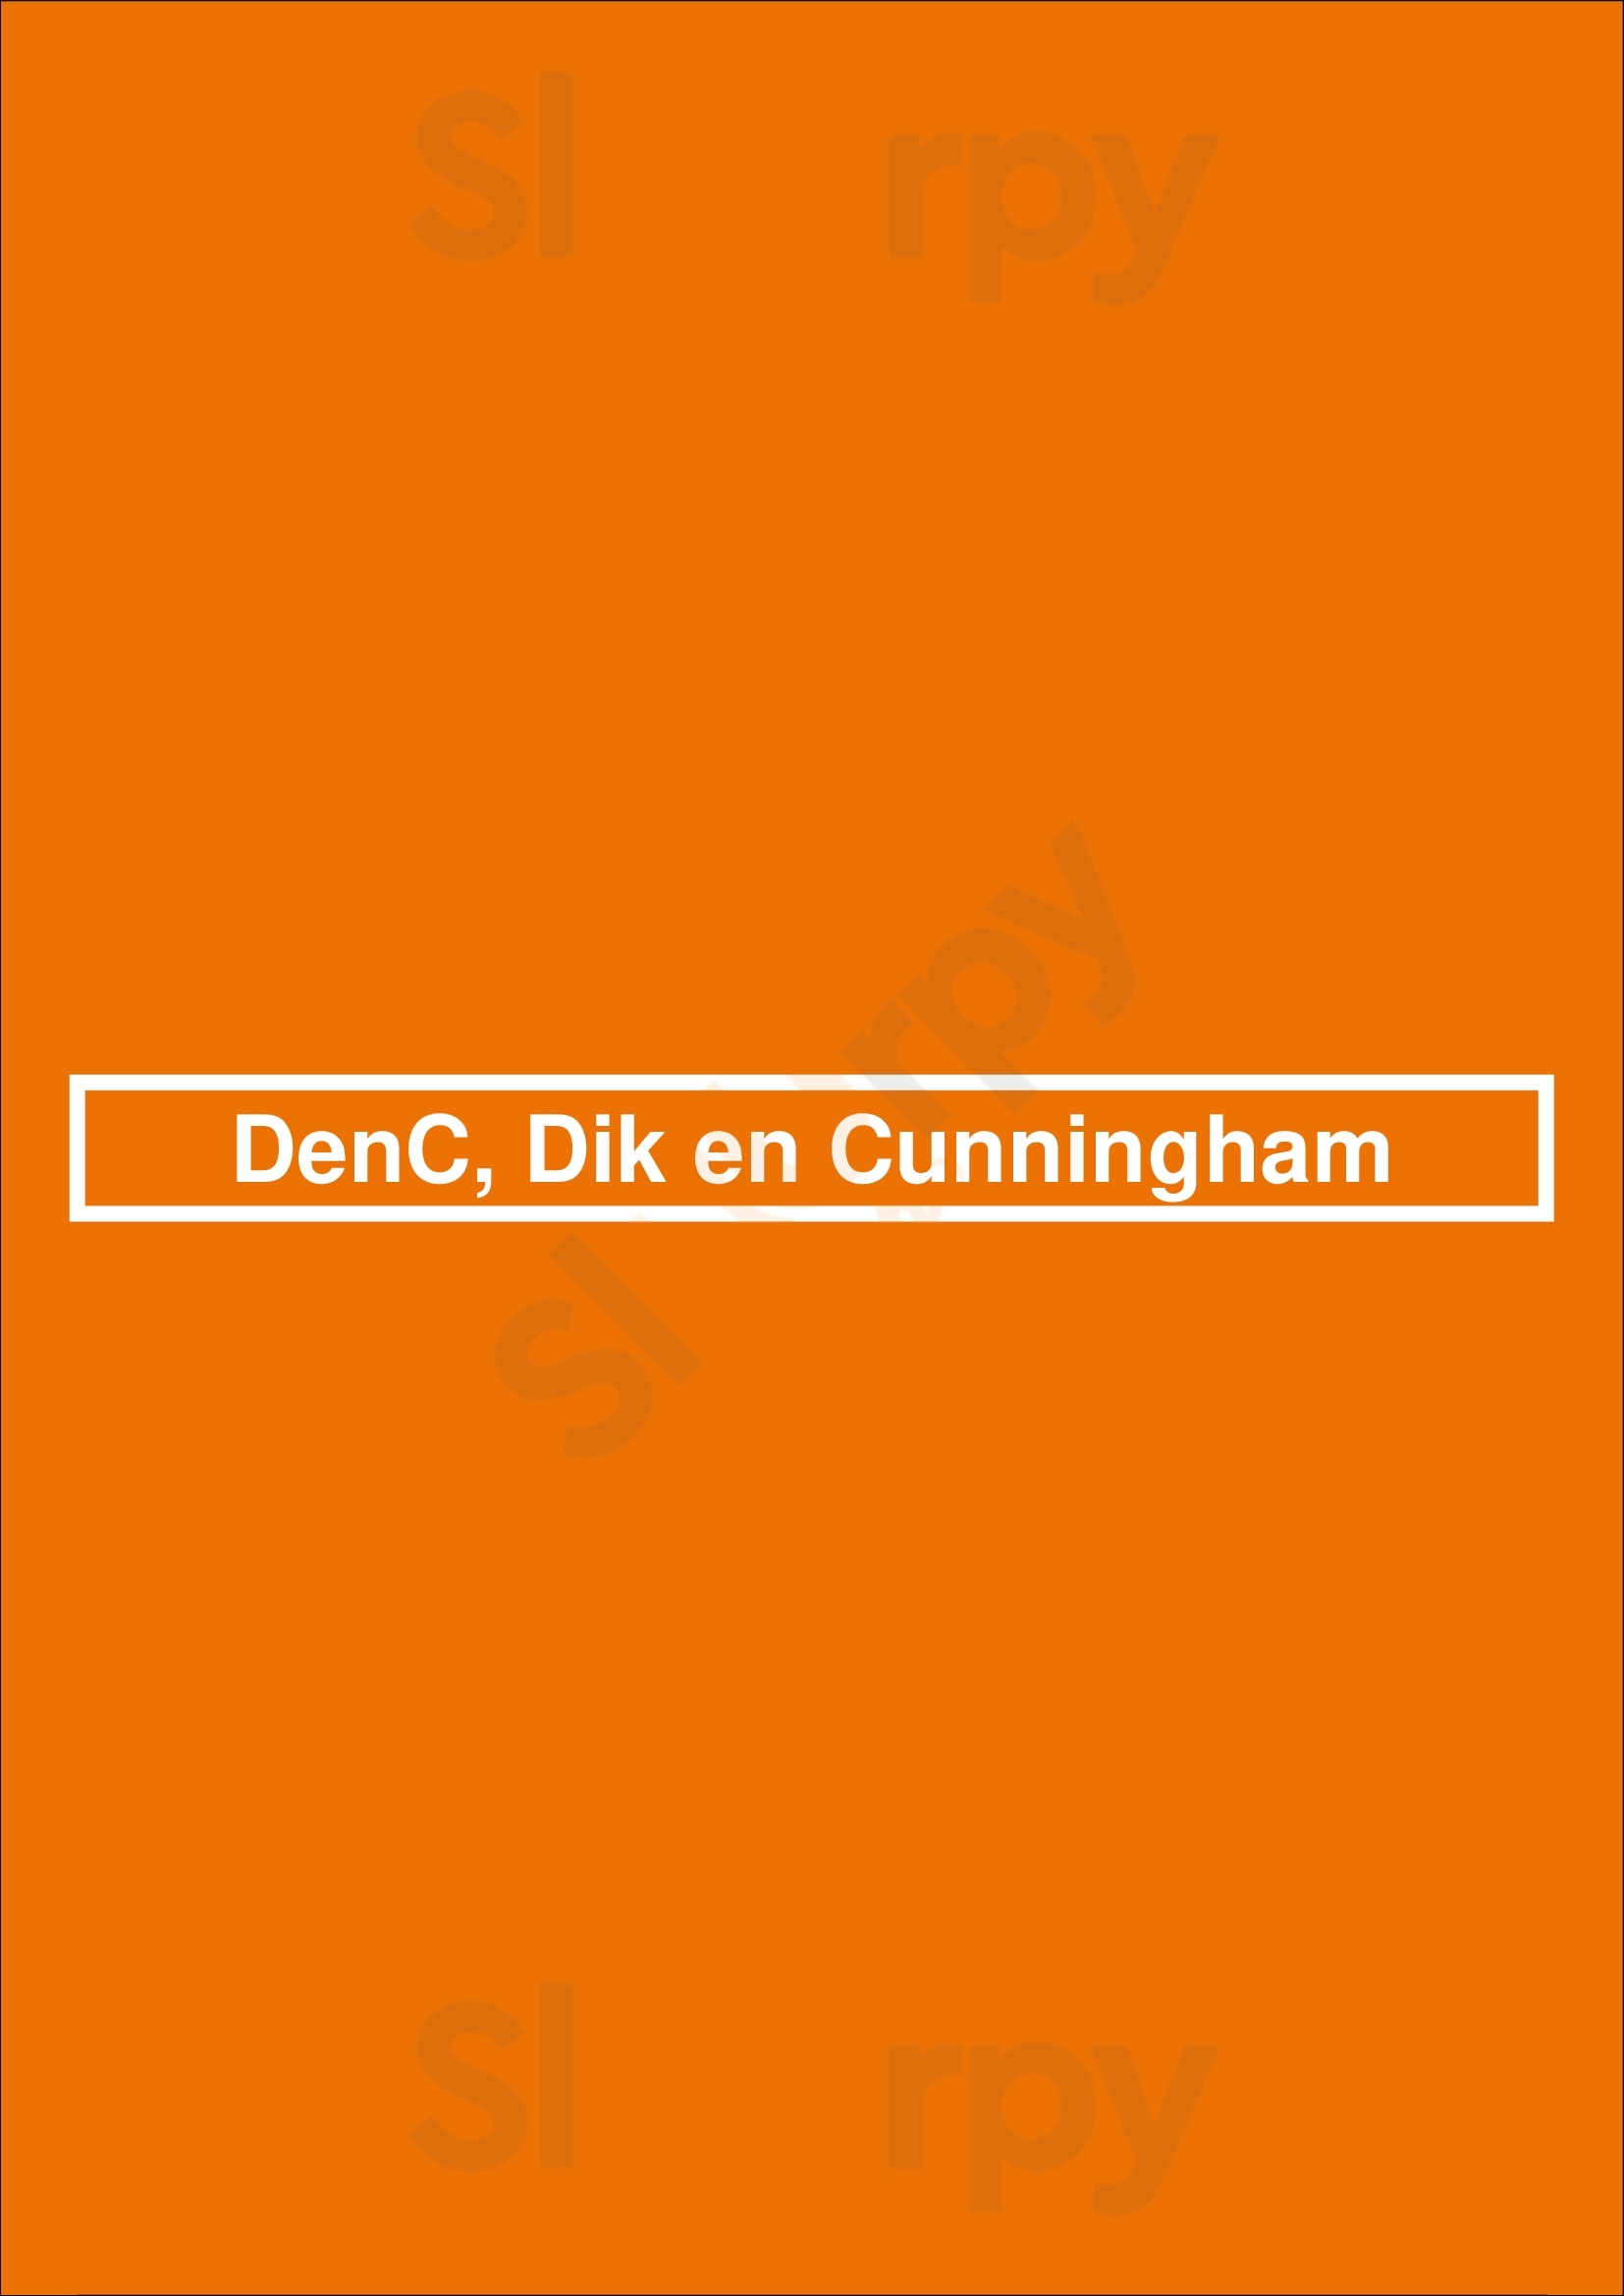 Denc, Dik En Cunningham Amsterdam Menu - 1